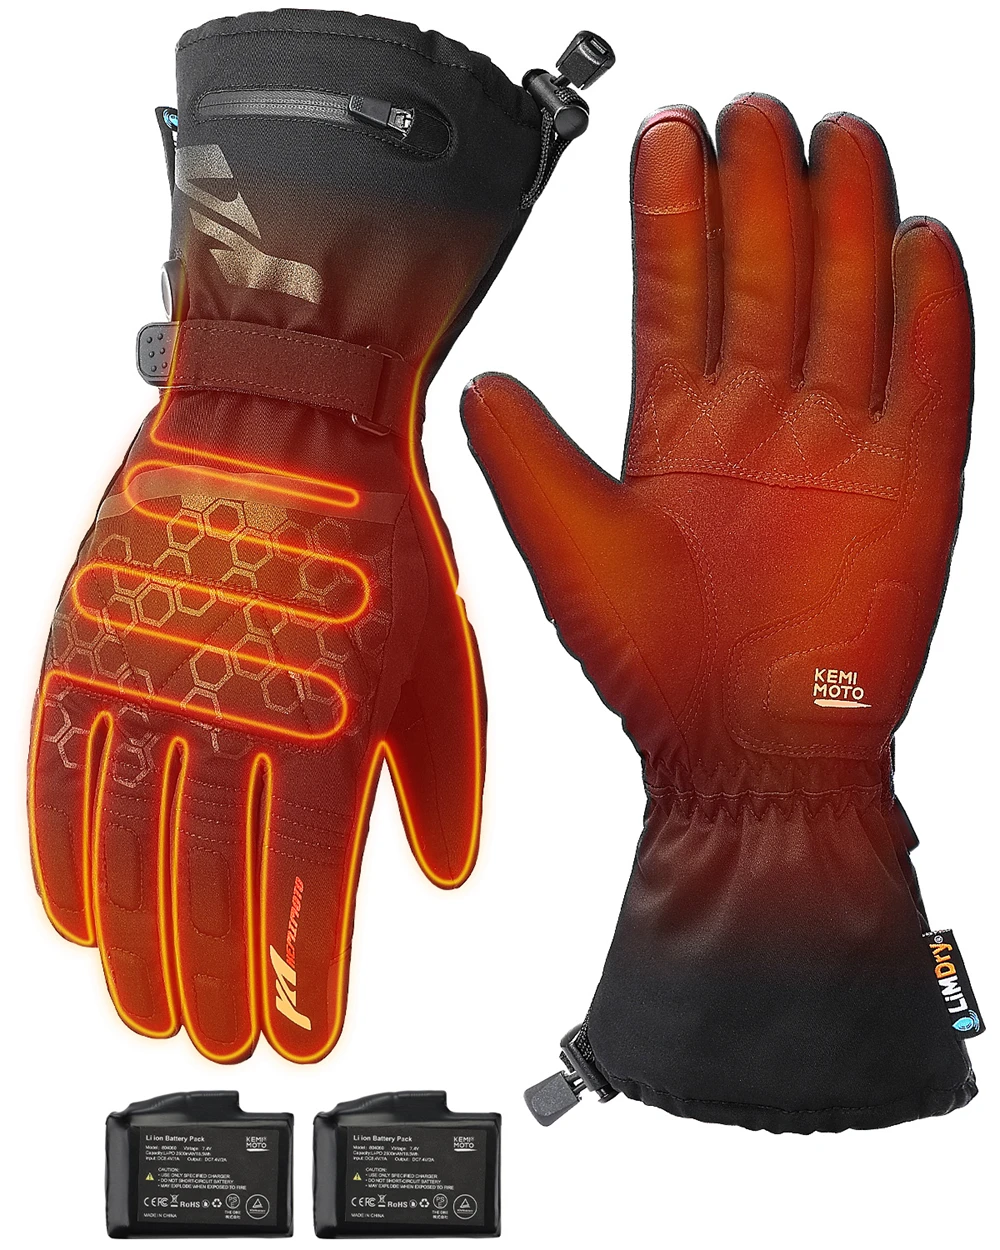 KEMIMOTO  Winter Rechargeable Battery Heated Gloves Full Fingers Heating Winter warm Ski Gloves Men Women Waterproof Tactical Mi